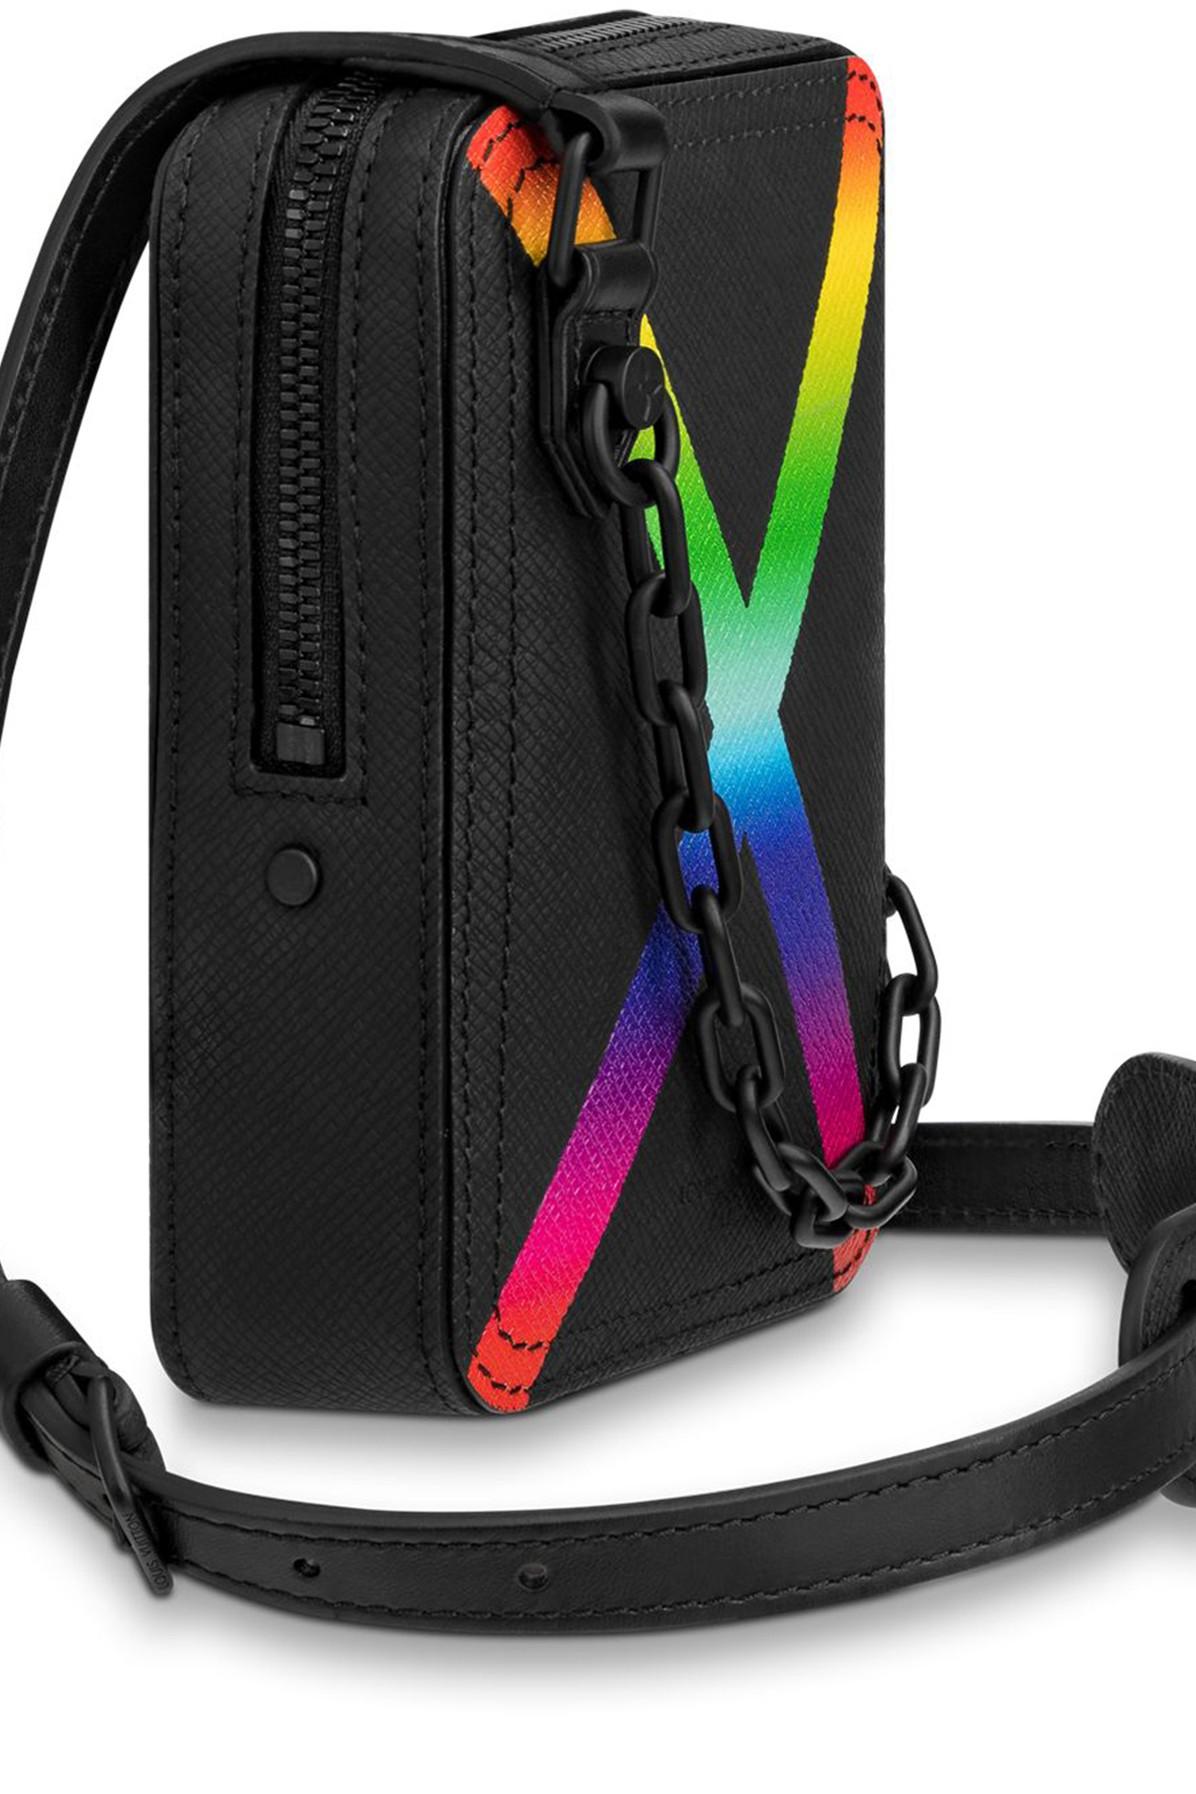 Louis Vuitton Danube Messenger Taiga Black/Rainbow